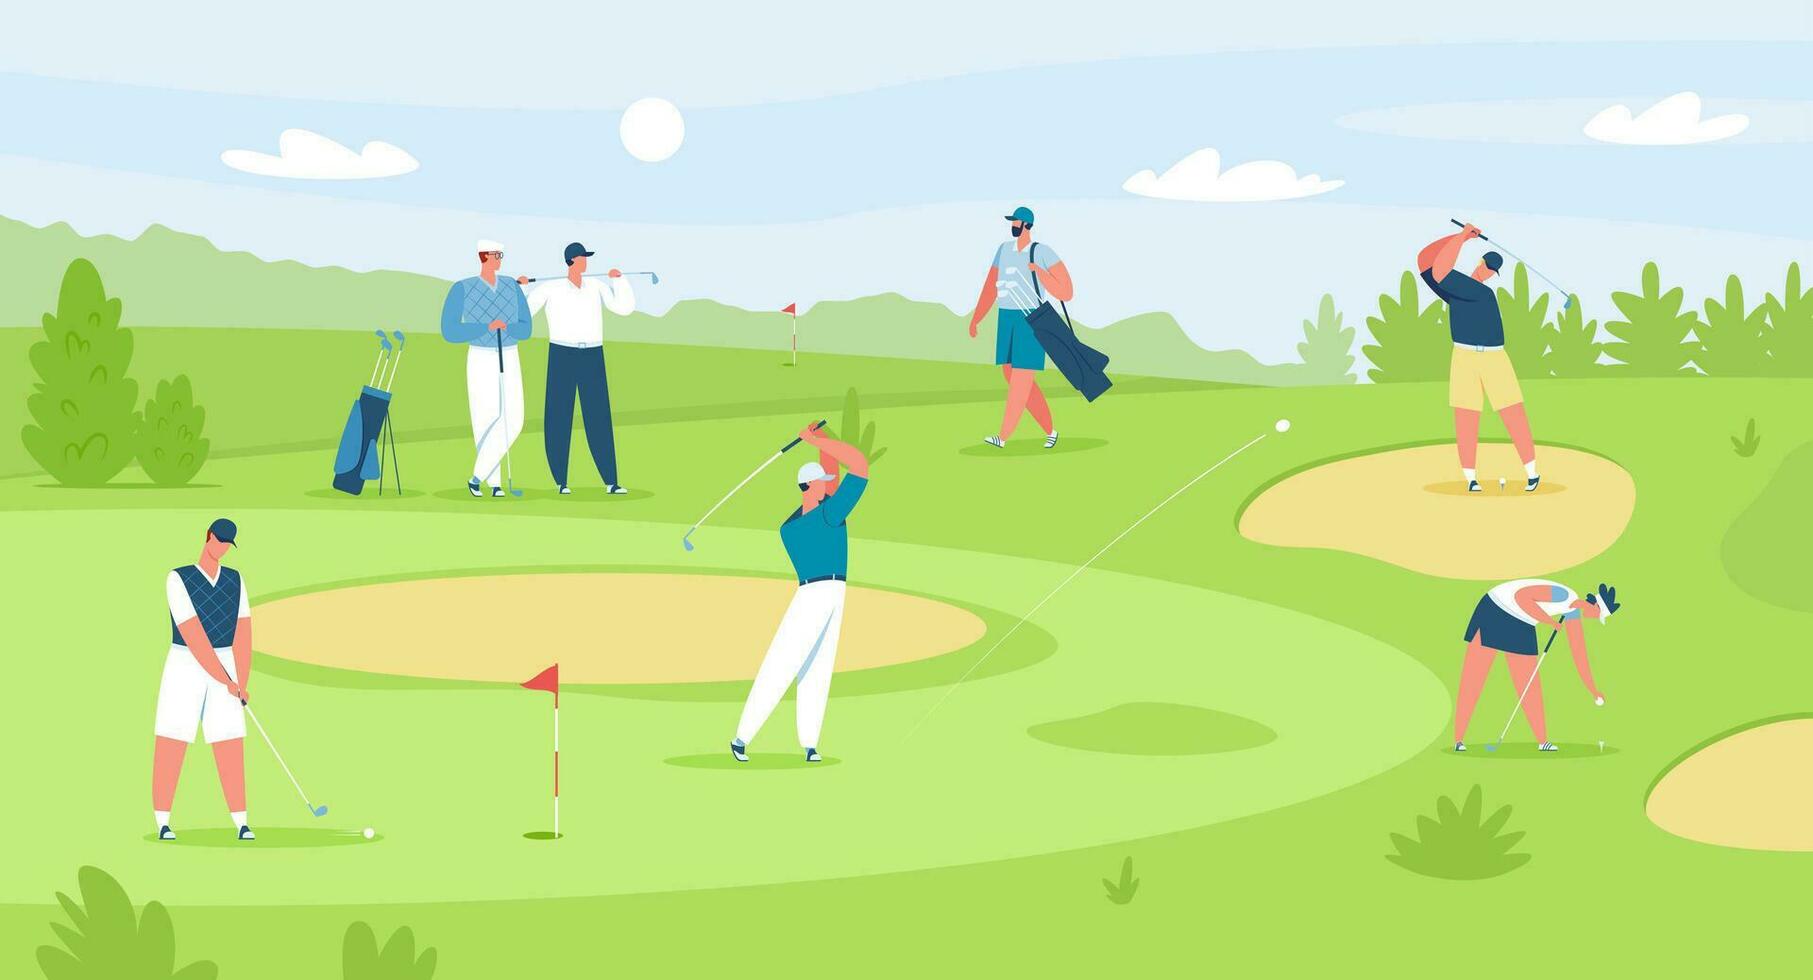 människor spelar golf på kurs, professionell golfare med klubbar. män och kvinnor golfspelare tecken på fält, golf konkurrens vektor illustration